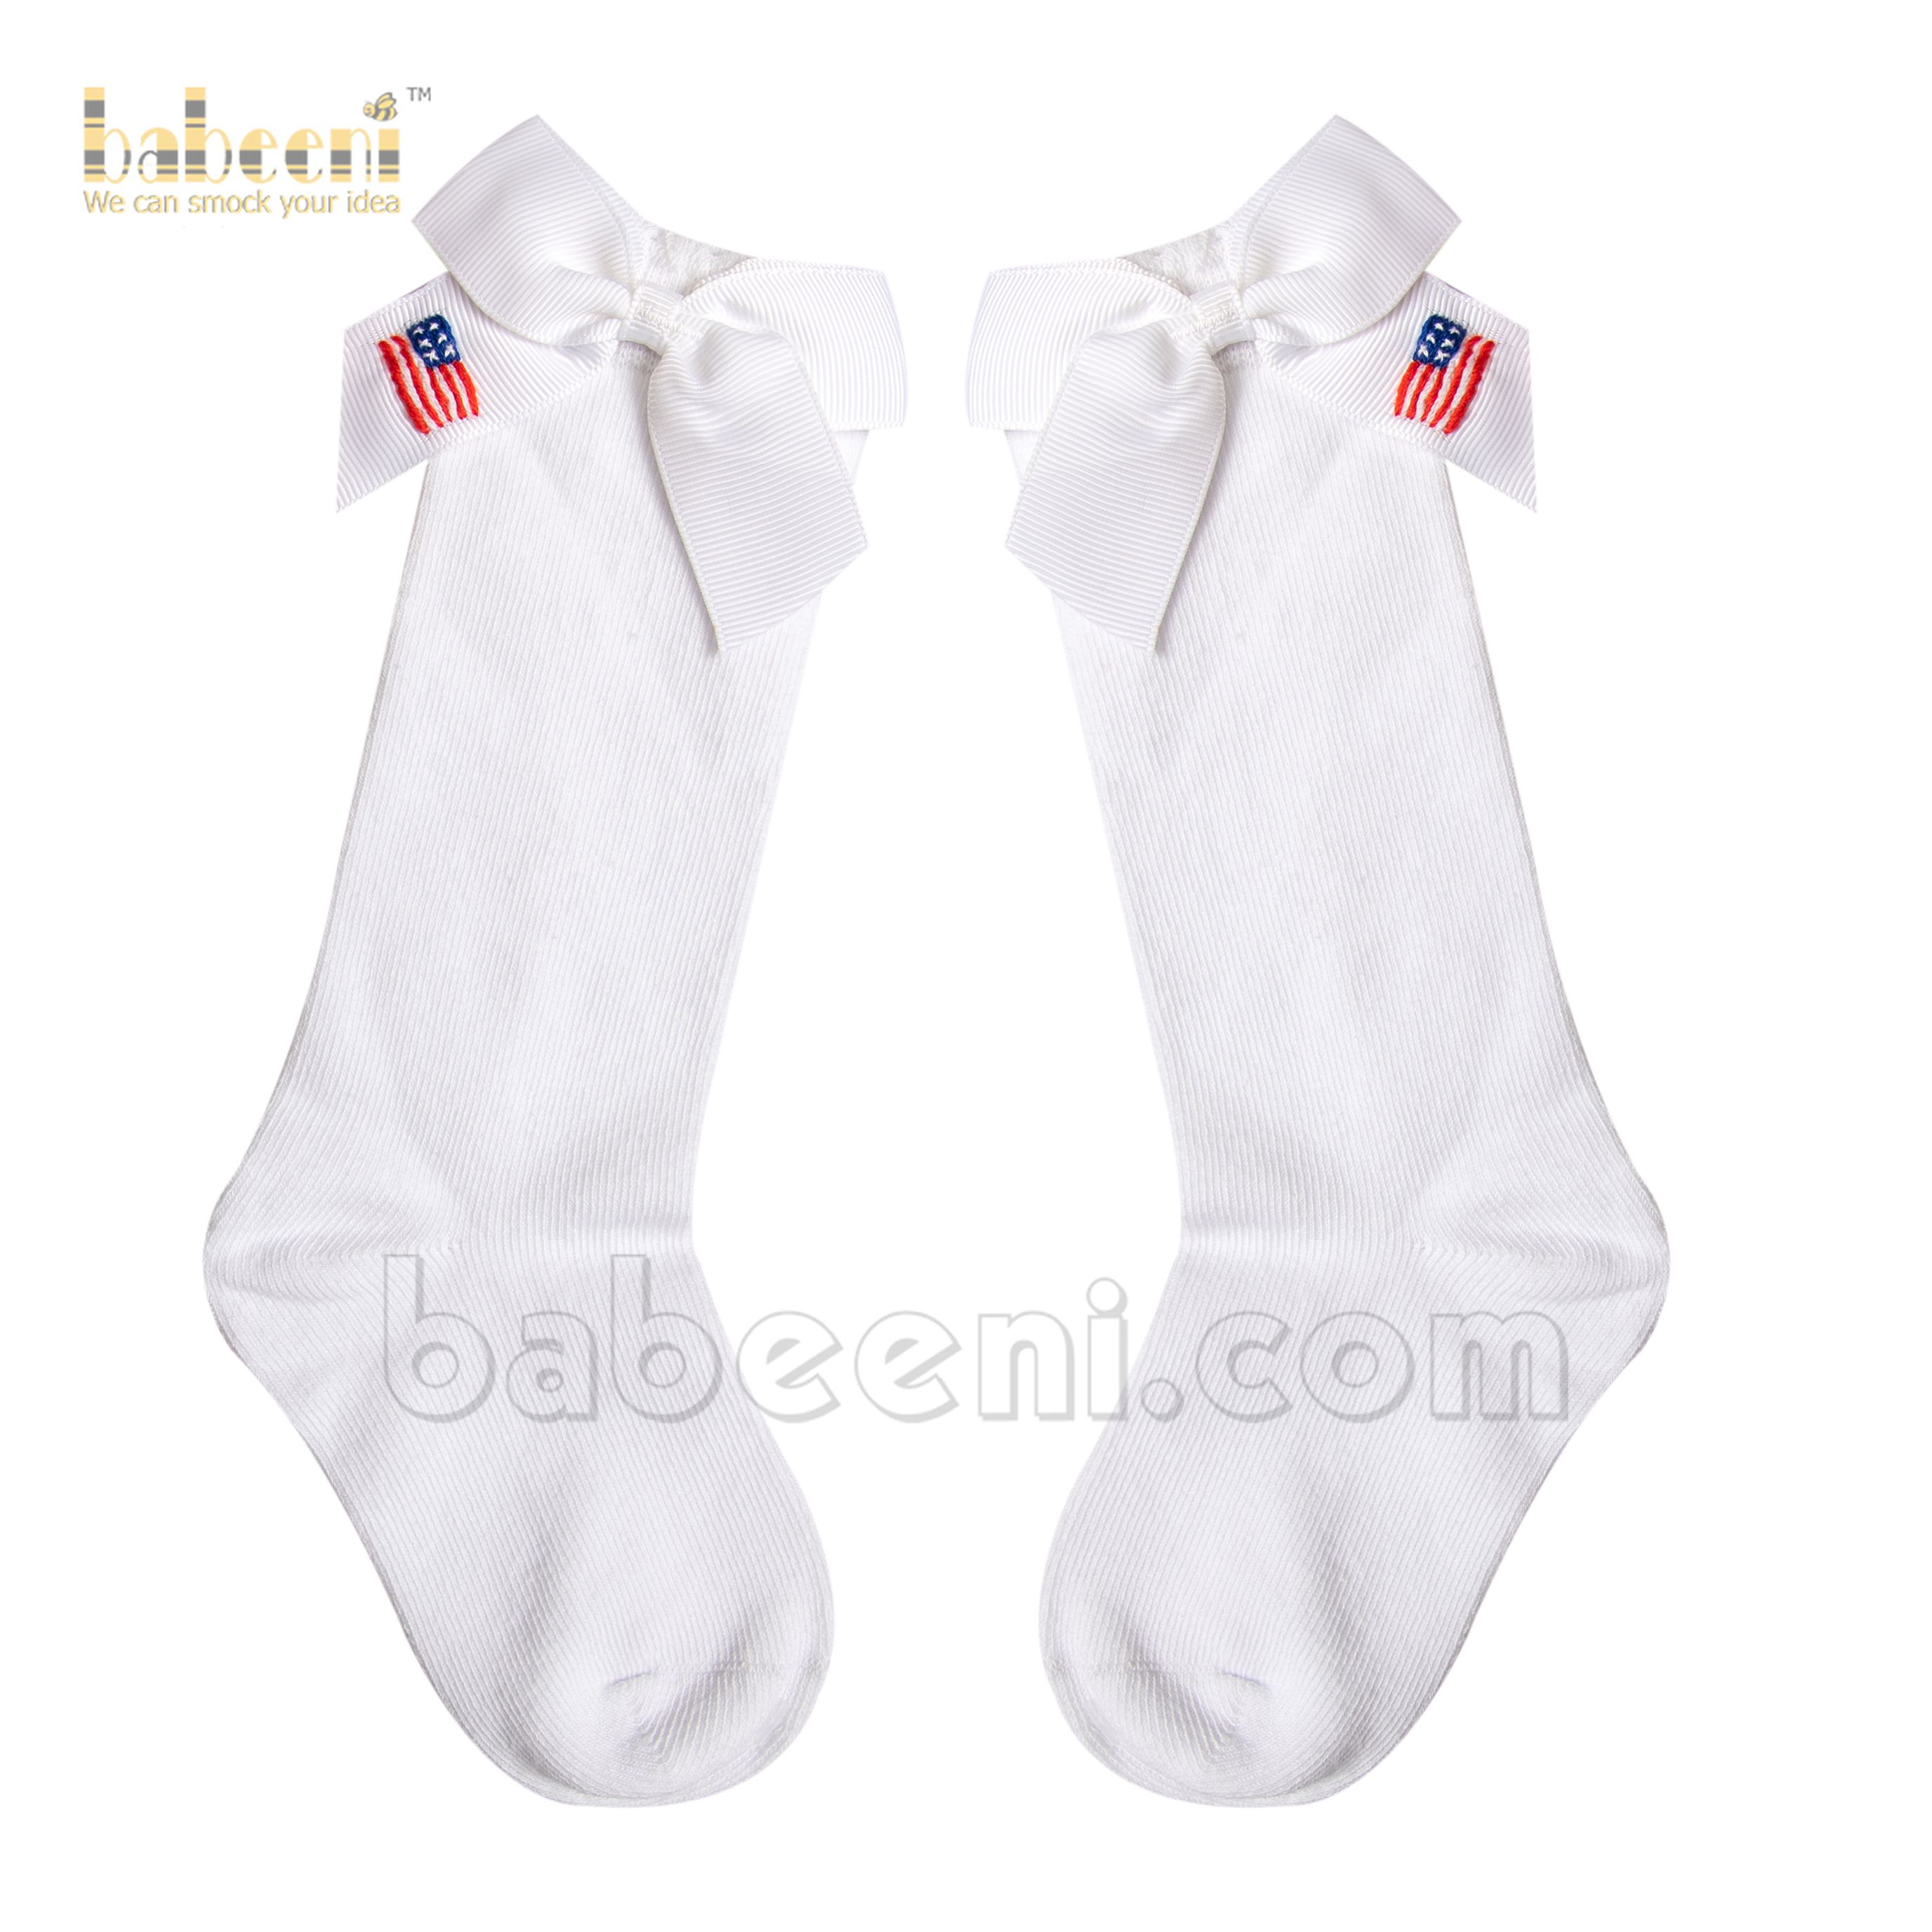 American flag socks for little girls - HS 24